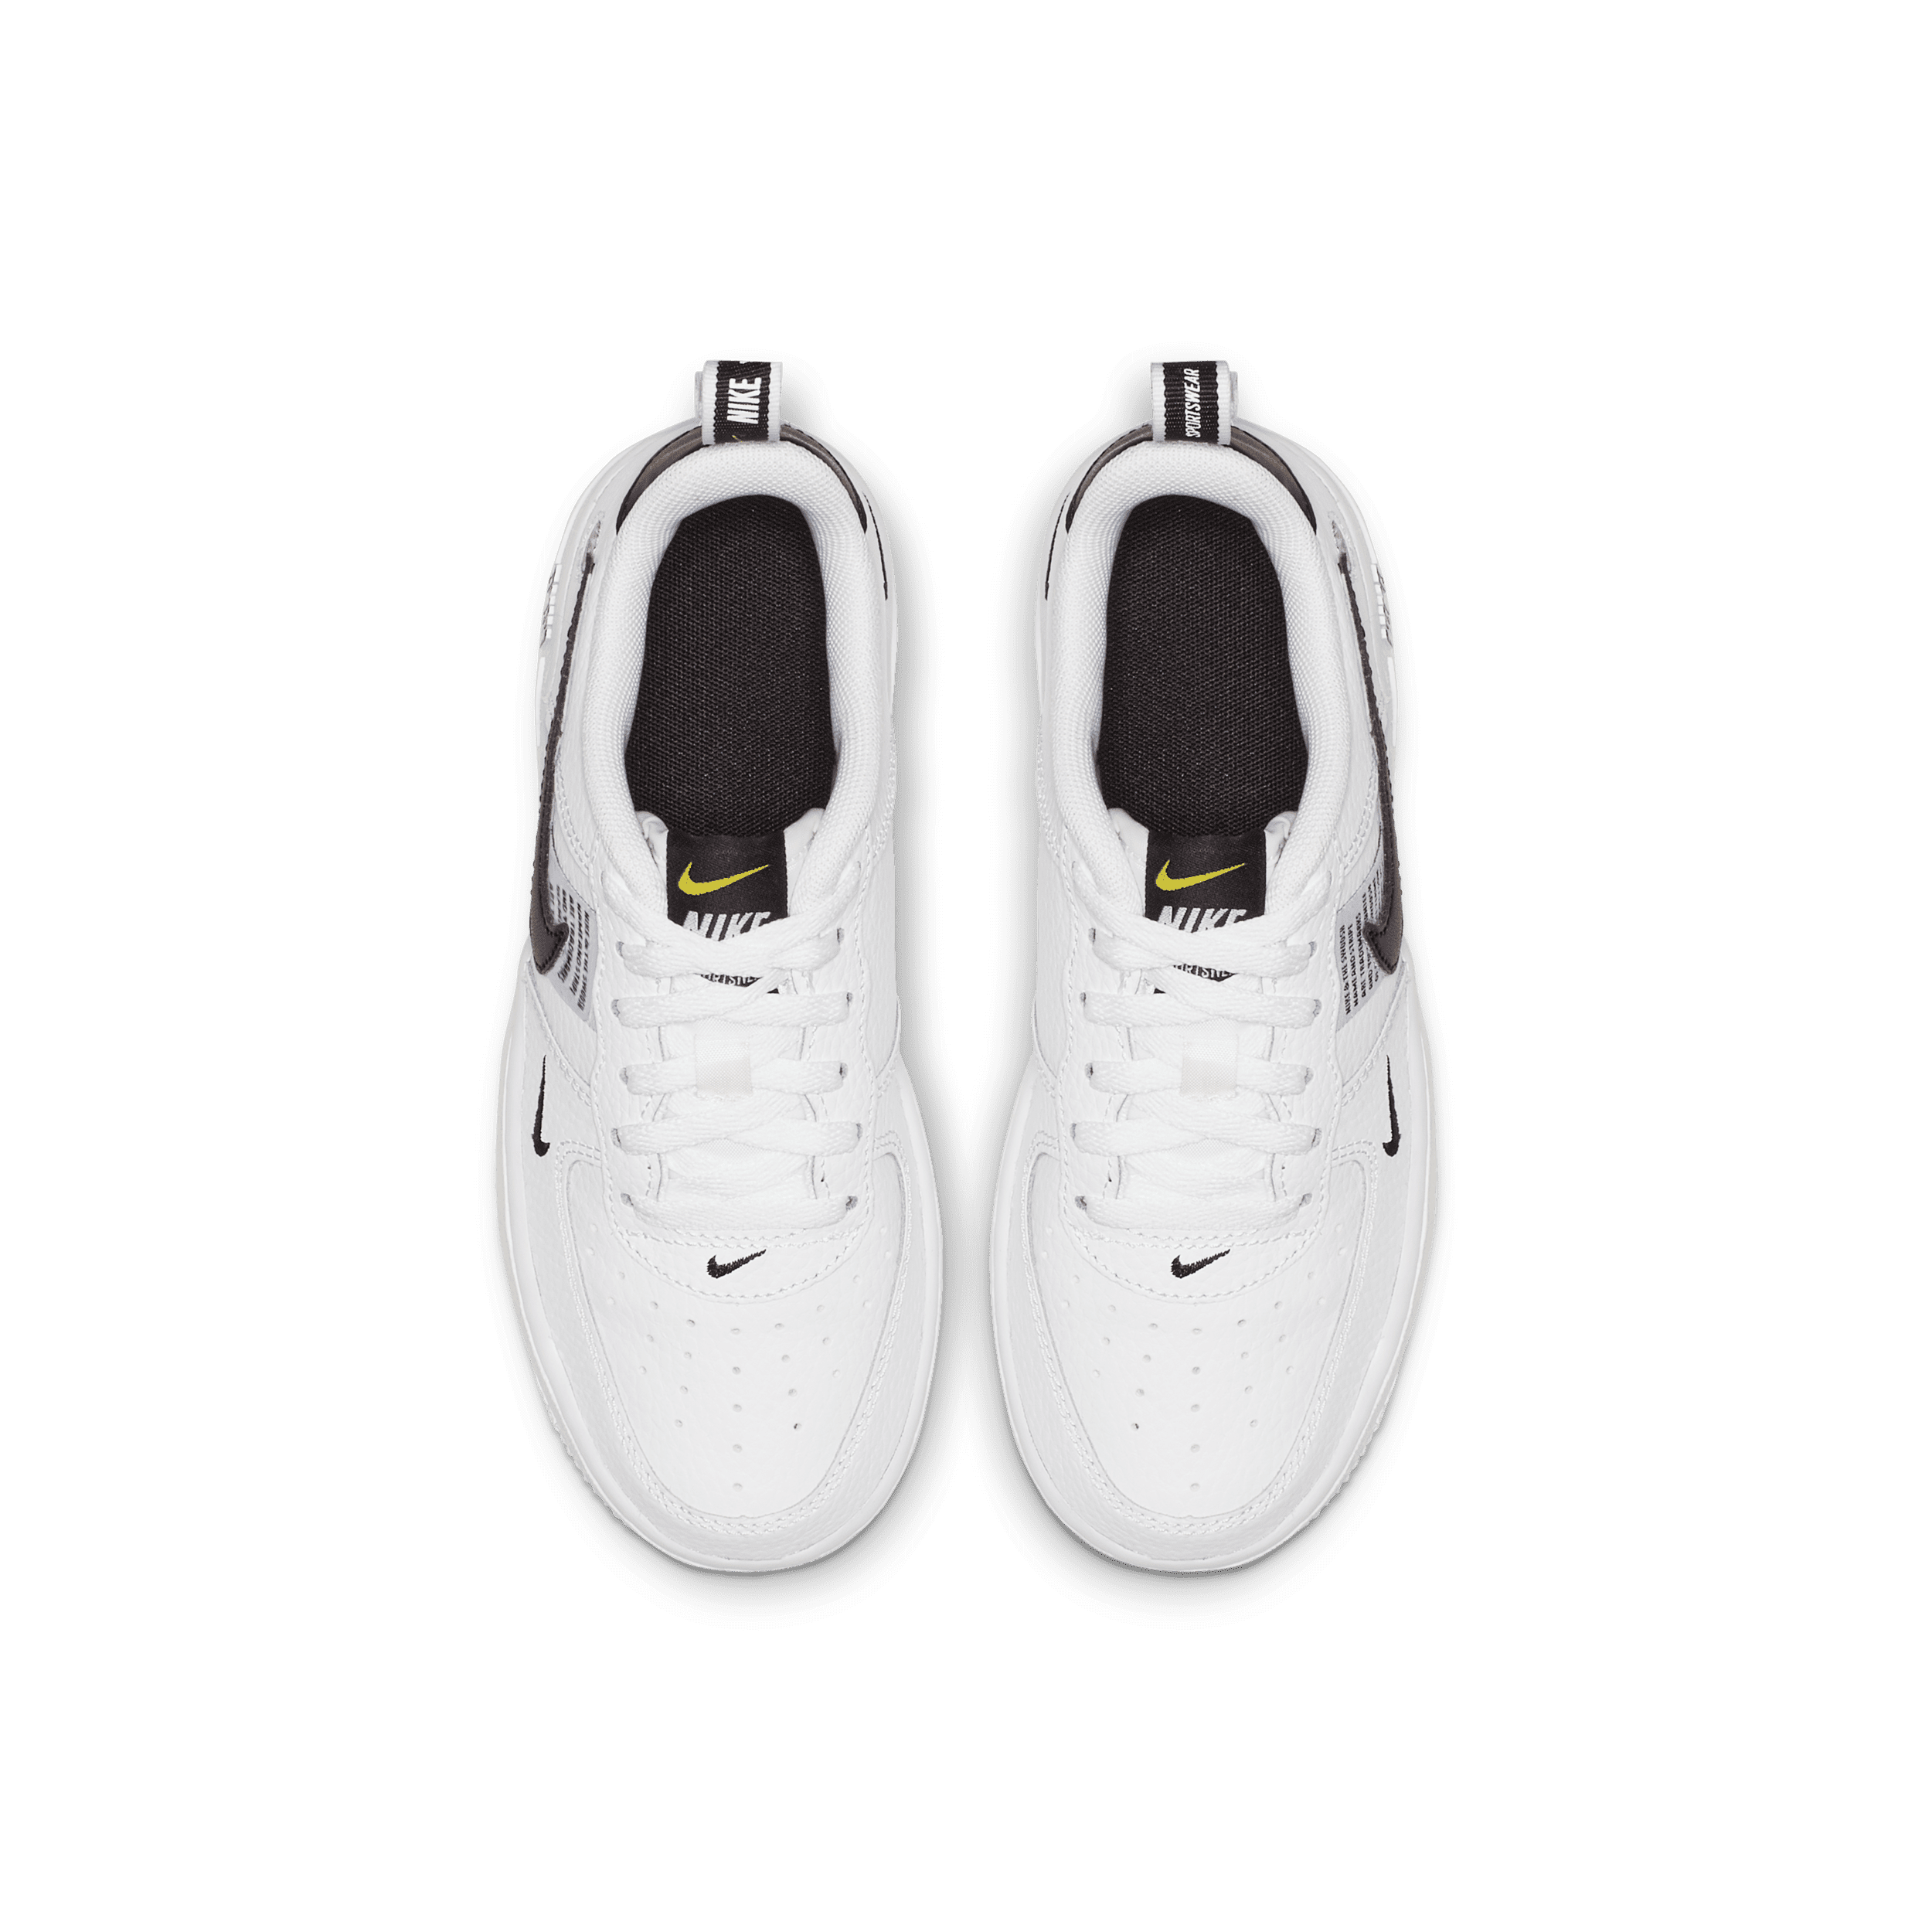 Nike Air Force 1 LV8 Utility White AV4272-100, Kinder Sneakers